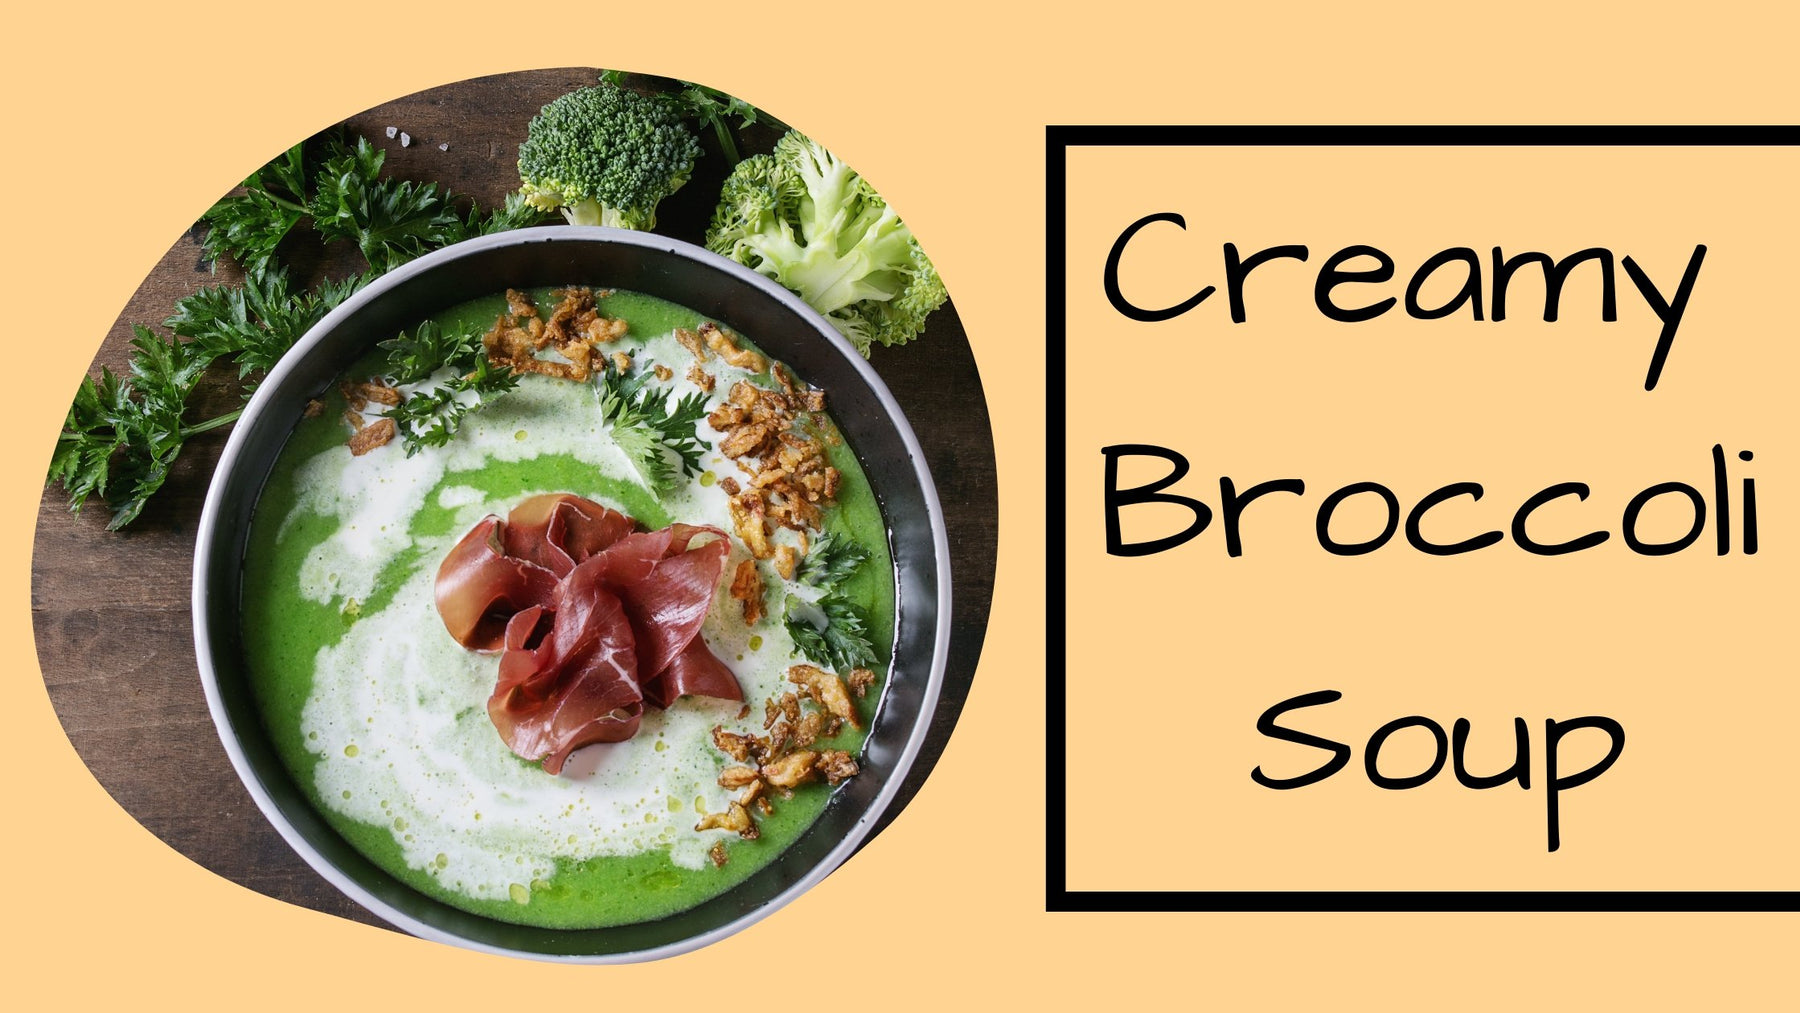 Creamy Broccoli Soup. | Roshni Sanghvi